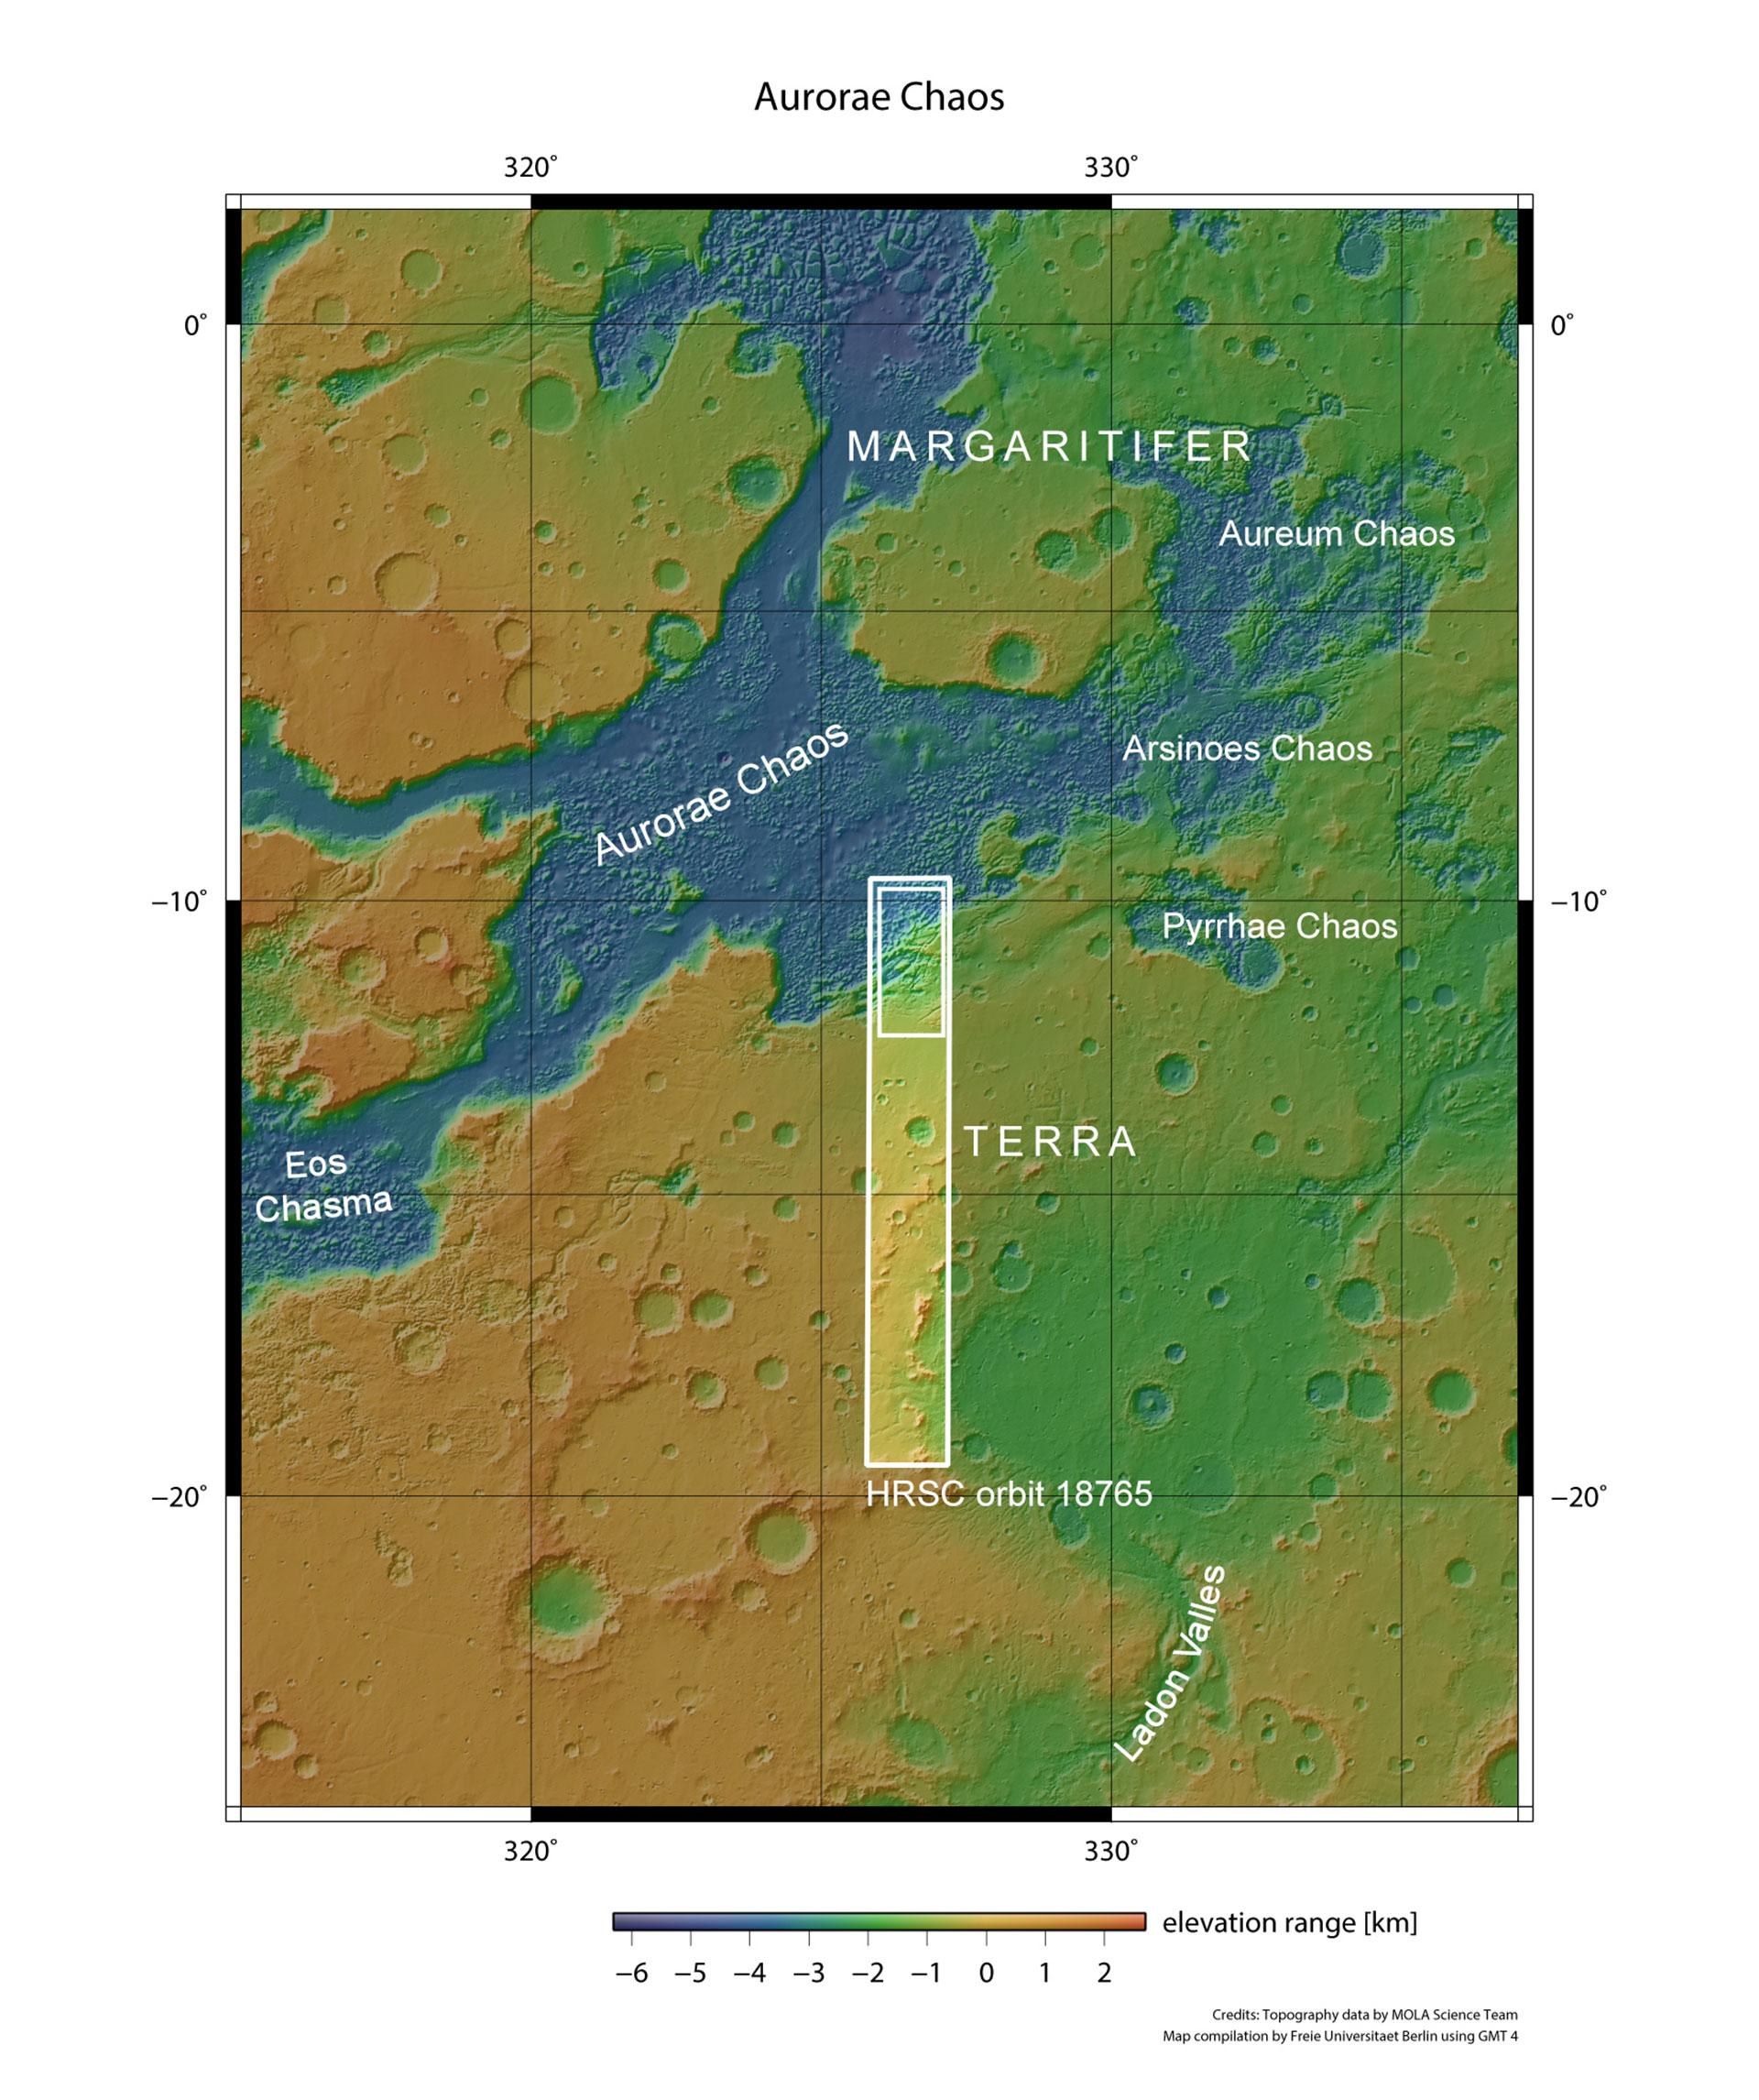 Topographische Karte von Margaritifer Terra und Aurorae Chaos